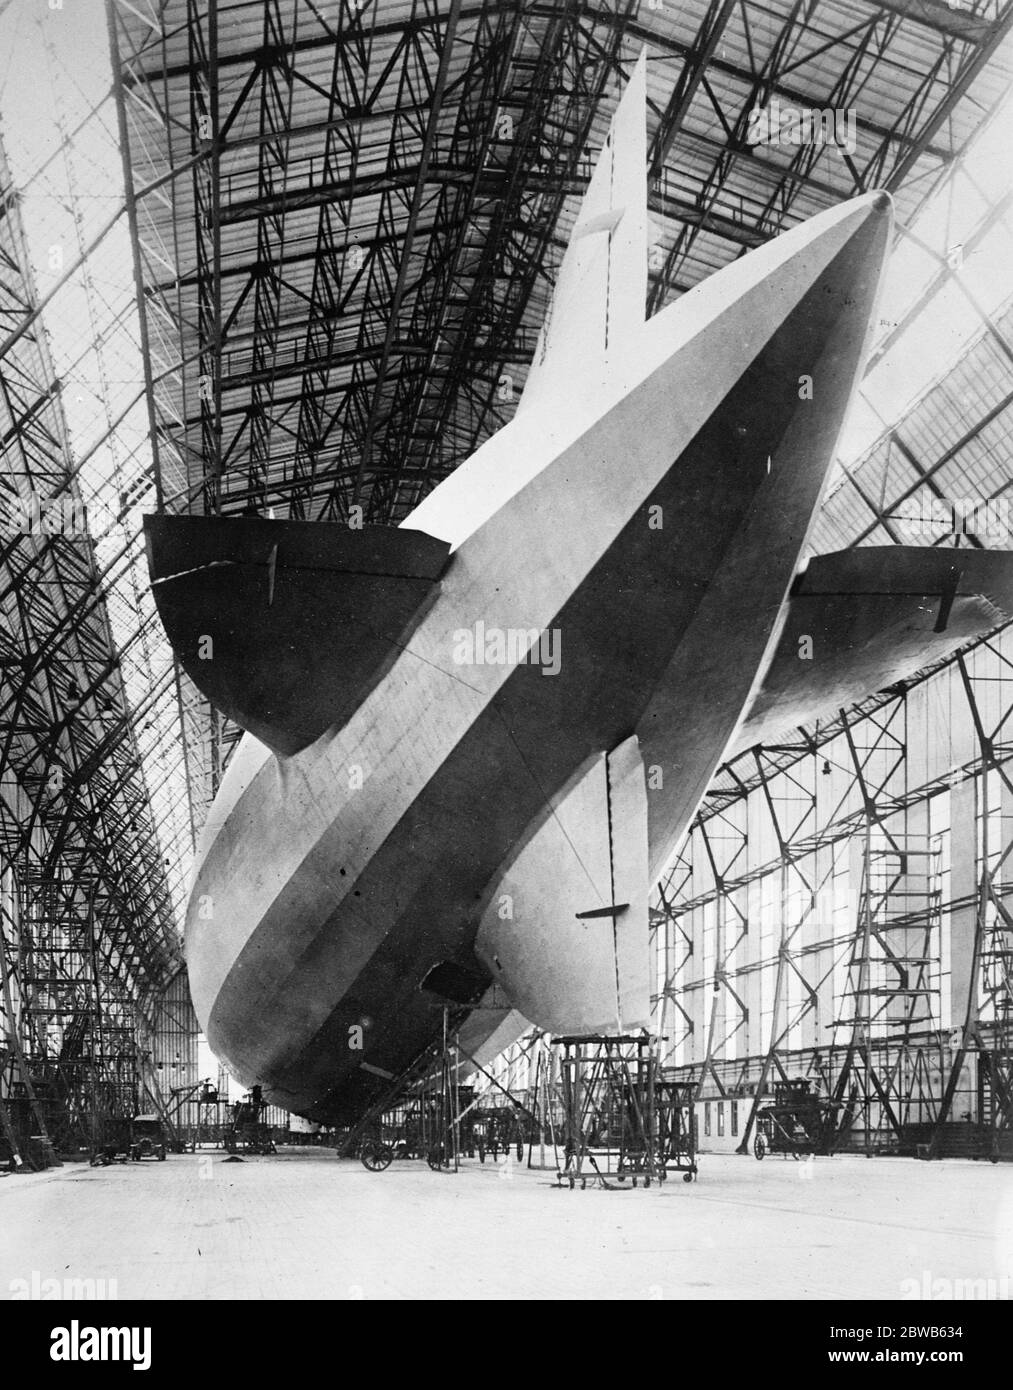 Erste Fotos vom Zeppelin, der den Atlantik überqueren will. Gebaut für Amerika in Friedrichshafen, die Rückansicht des ZR3 26 August 1924 Stockfoto